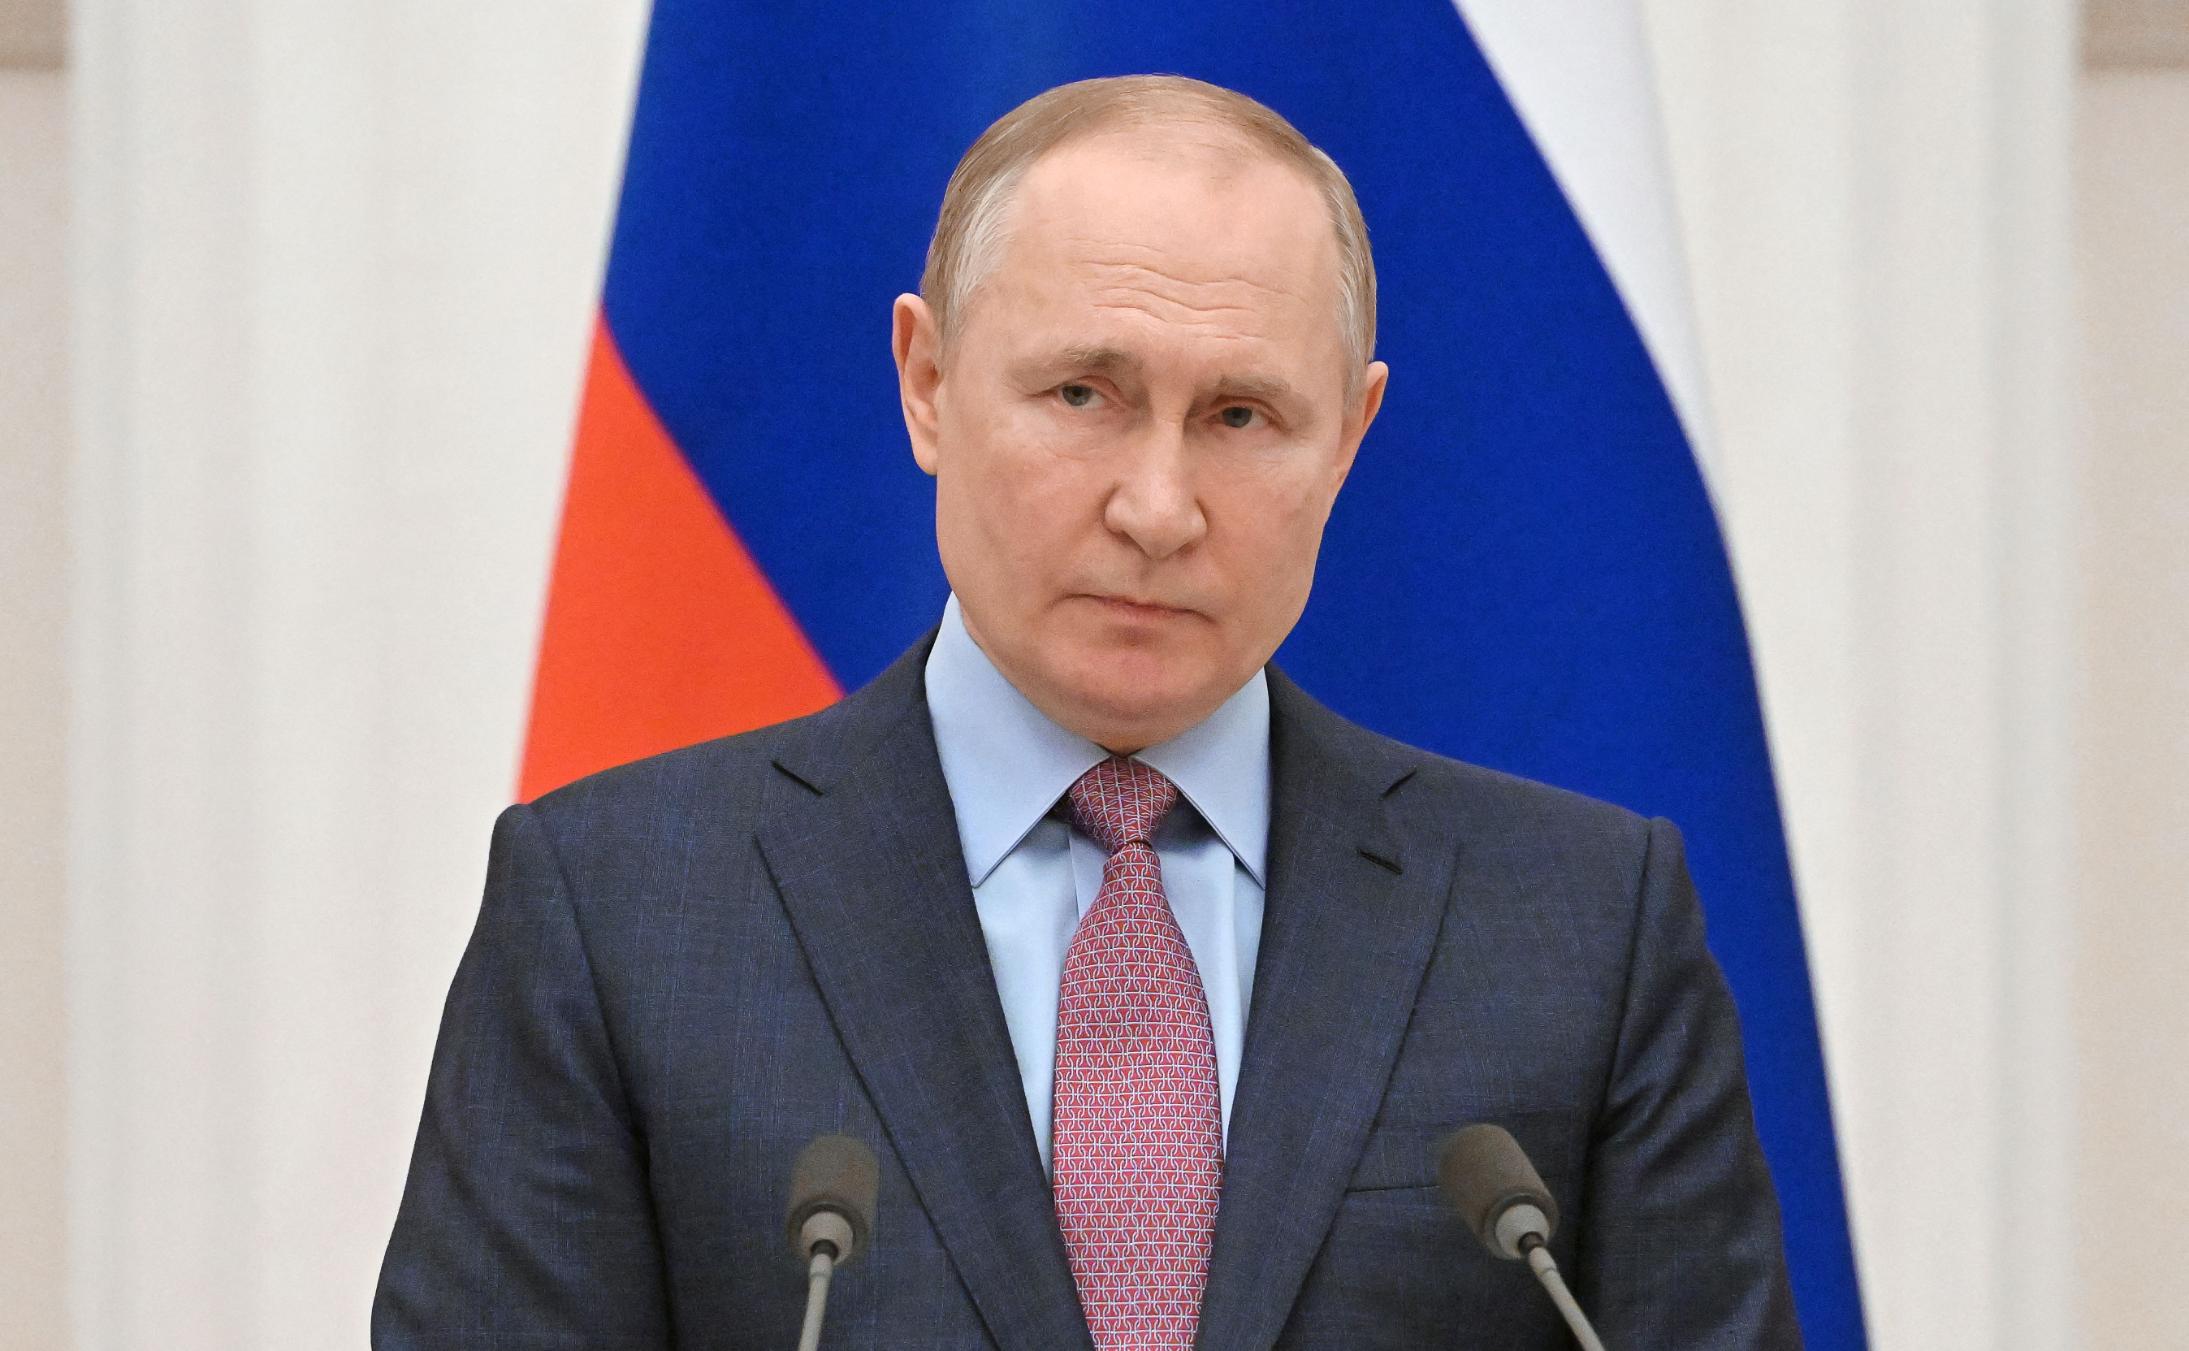 "Putin a mințit în legătură cu planurile Rusiei în Ucraina"